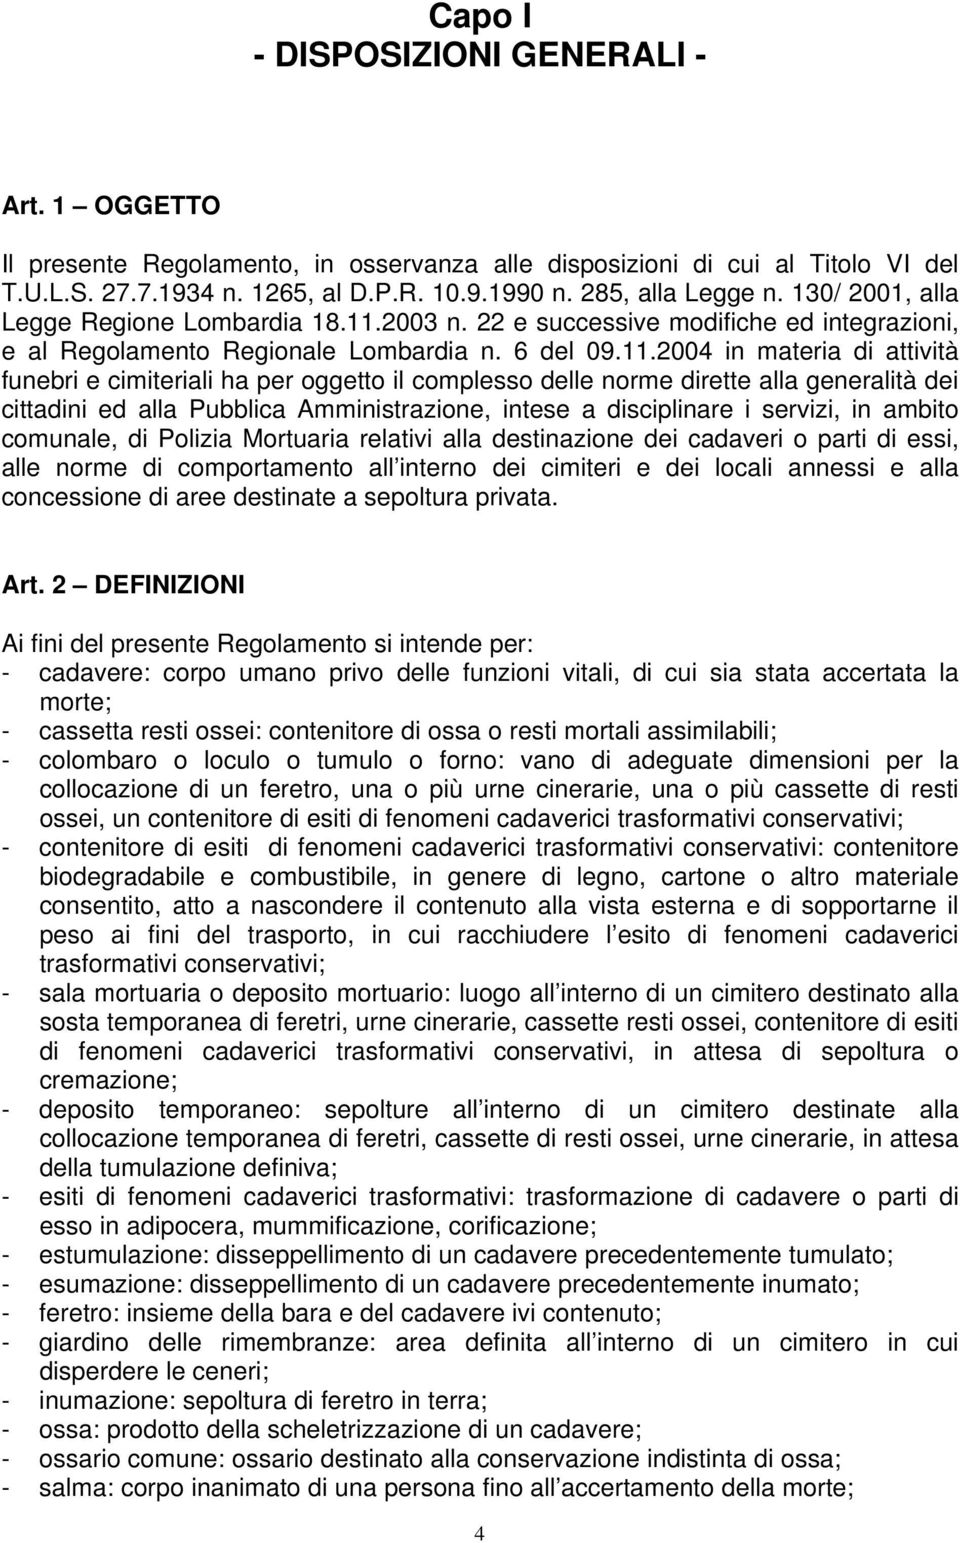 2003 n. 22 e successive modifiche ed integrazioni, e al Regolamento Regionale Lombardia n. 6 del 09.11.